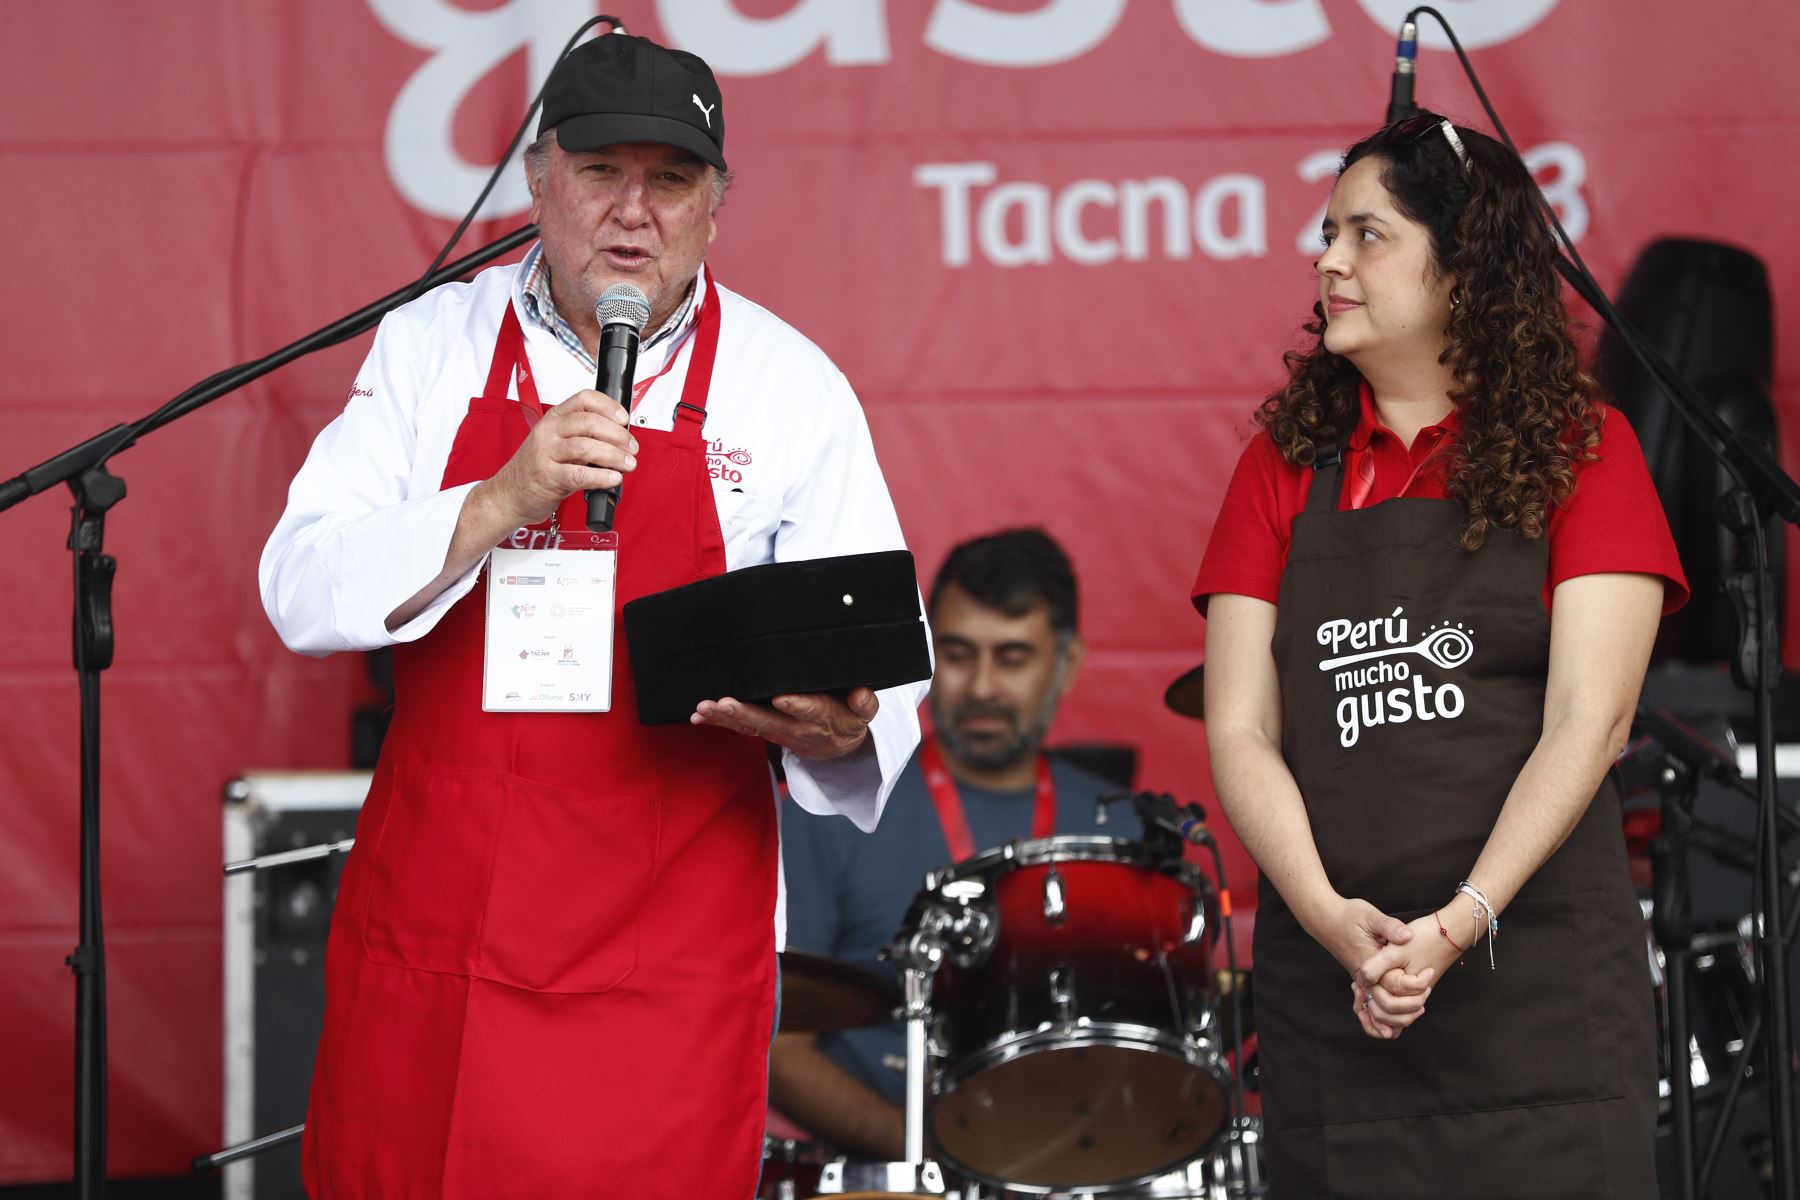 Premiación al Desarrollo de Turismo Gastronómico en el día de cierre de la feria gastronómica Perú Mucho Gusto Tacna 2023.
Foto: ANDINA/ Daniel Bracamonte